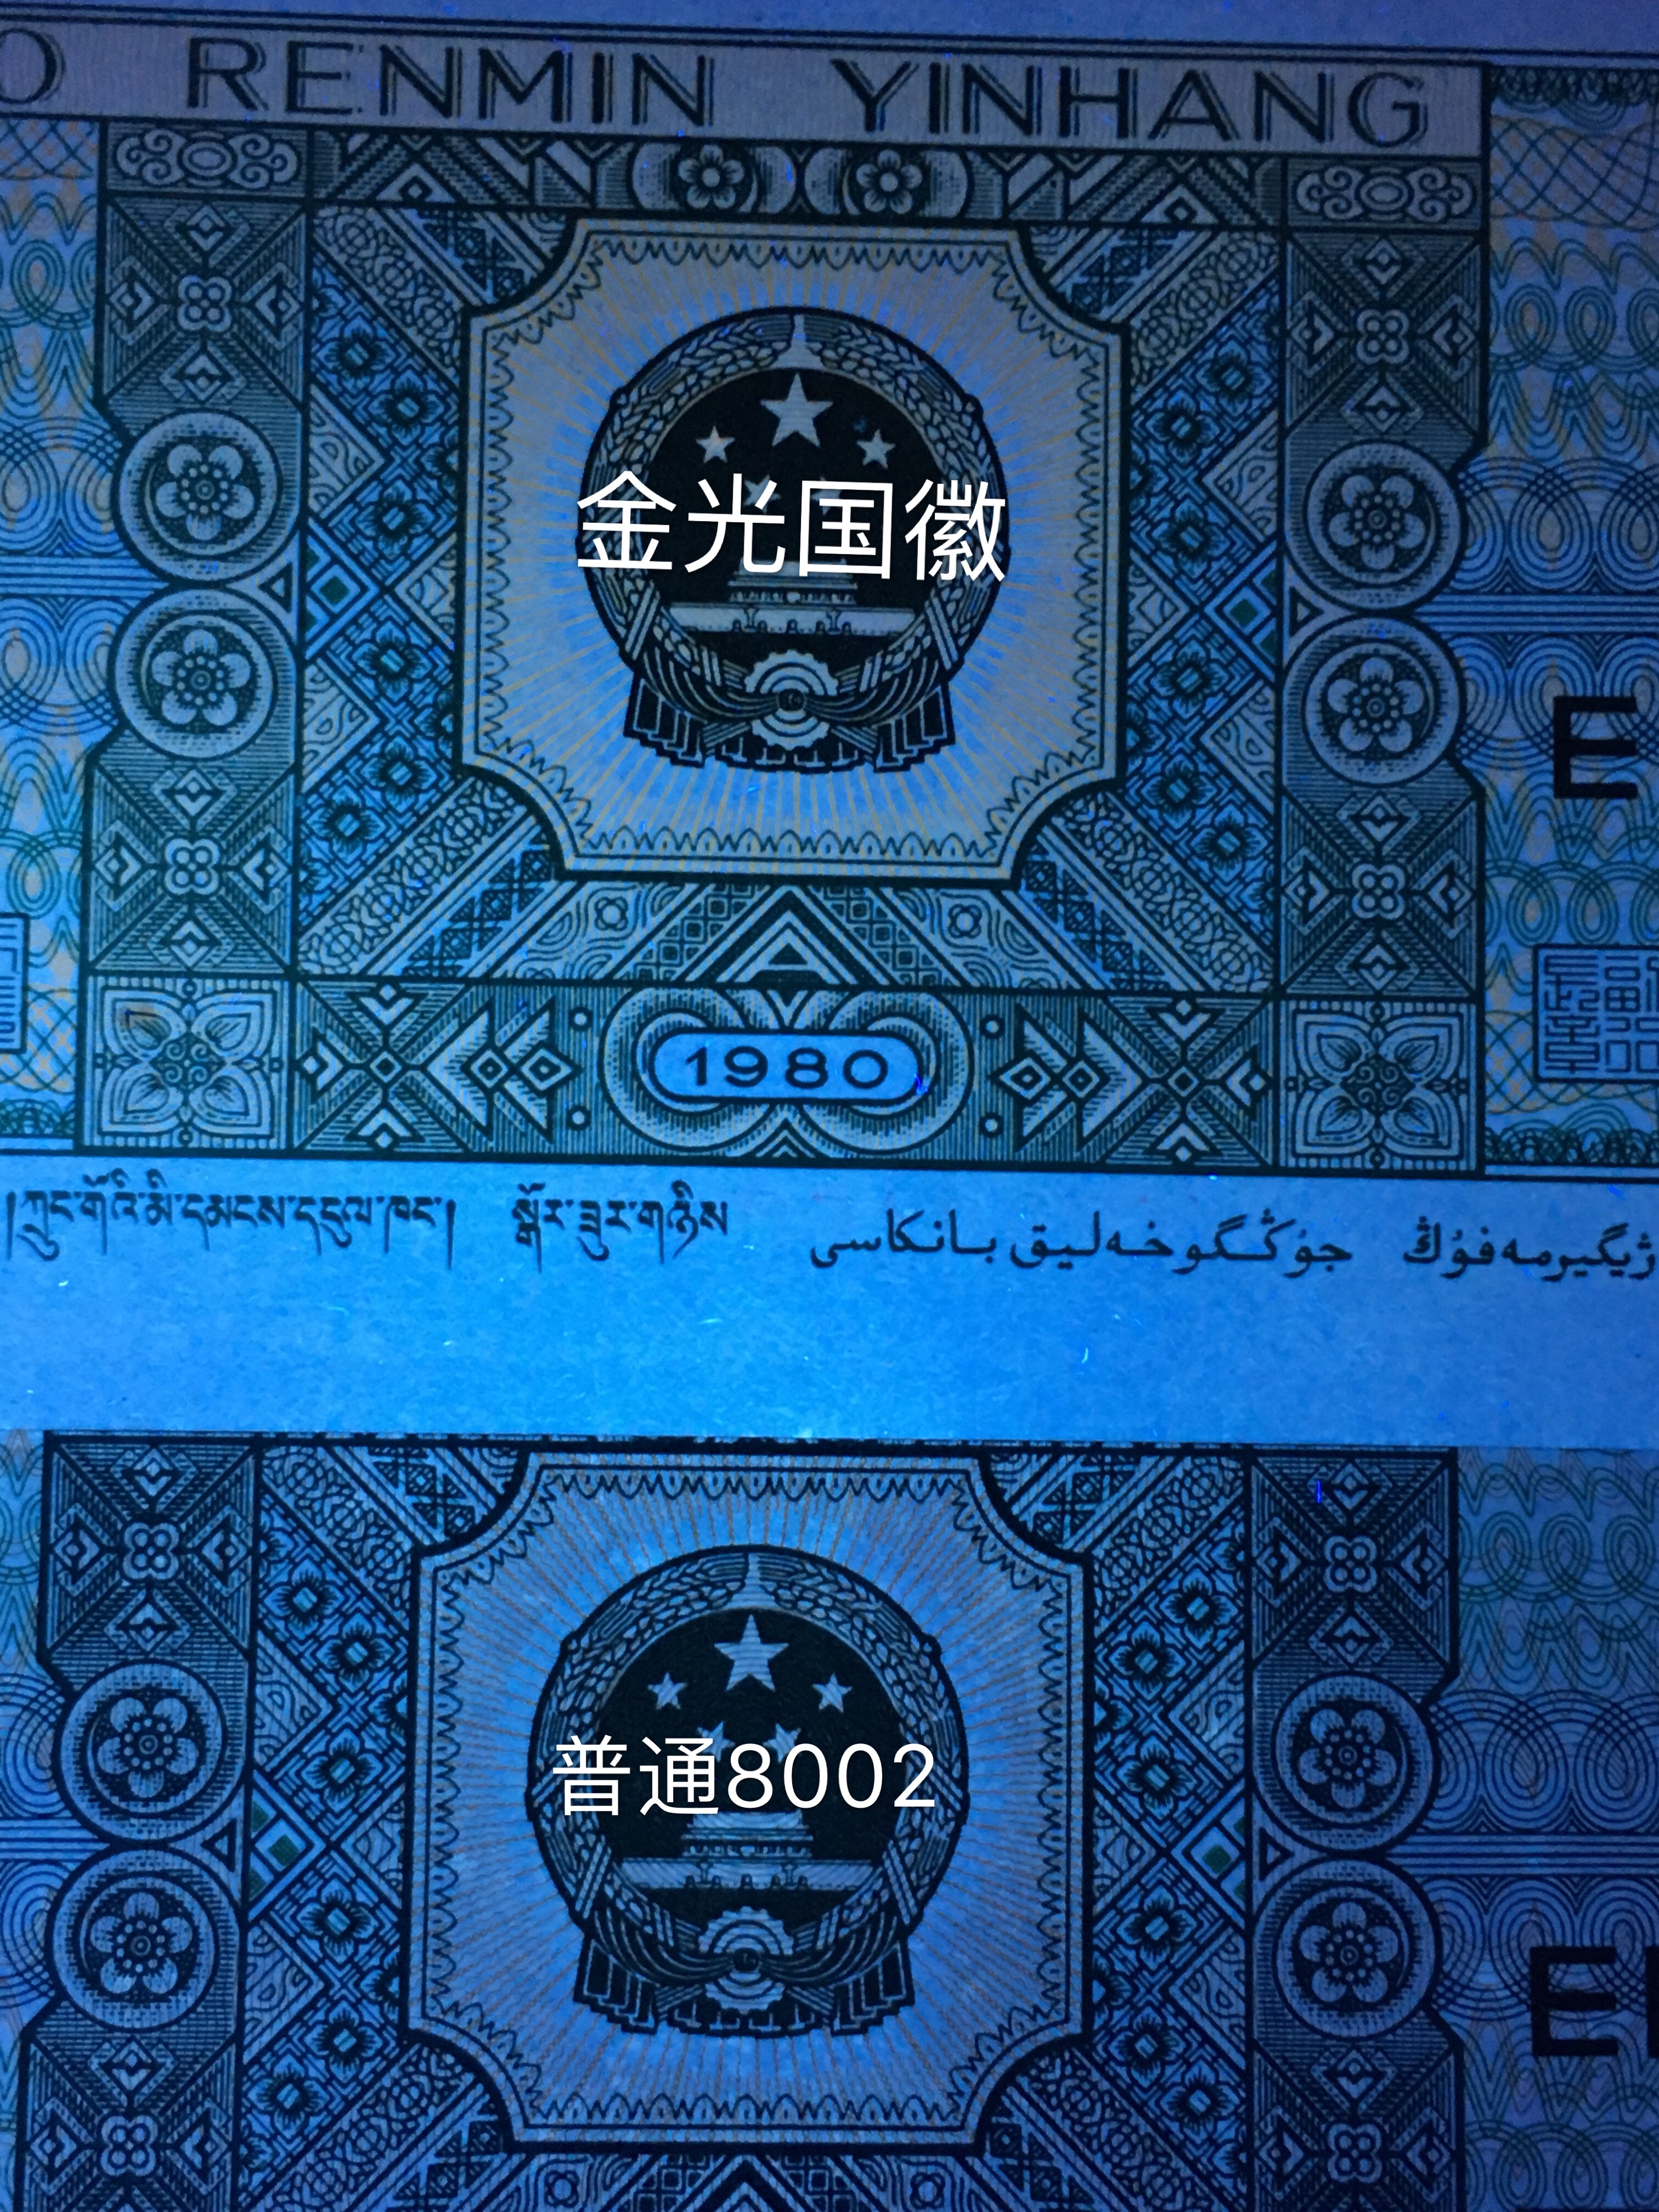 【8002金屋藏娇(金光国徽)